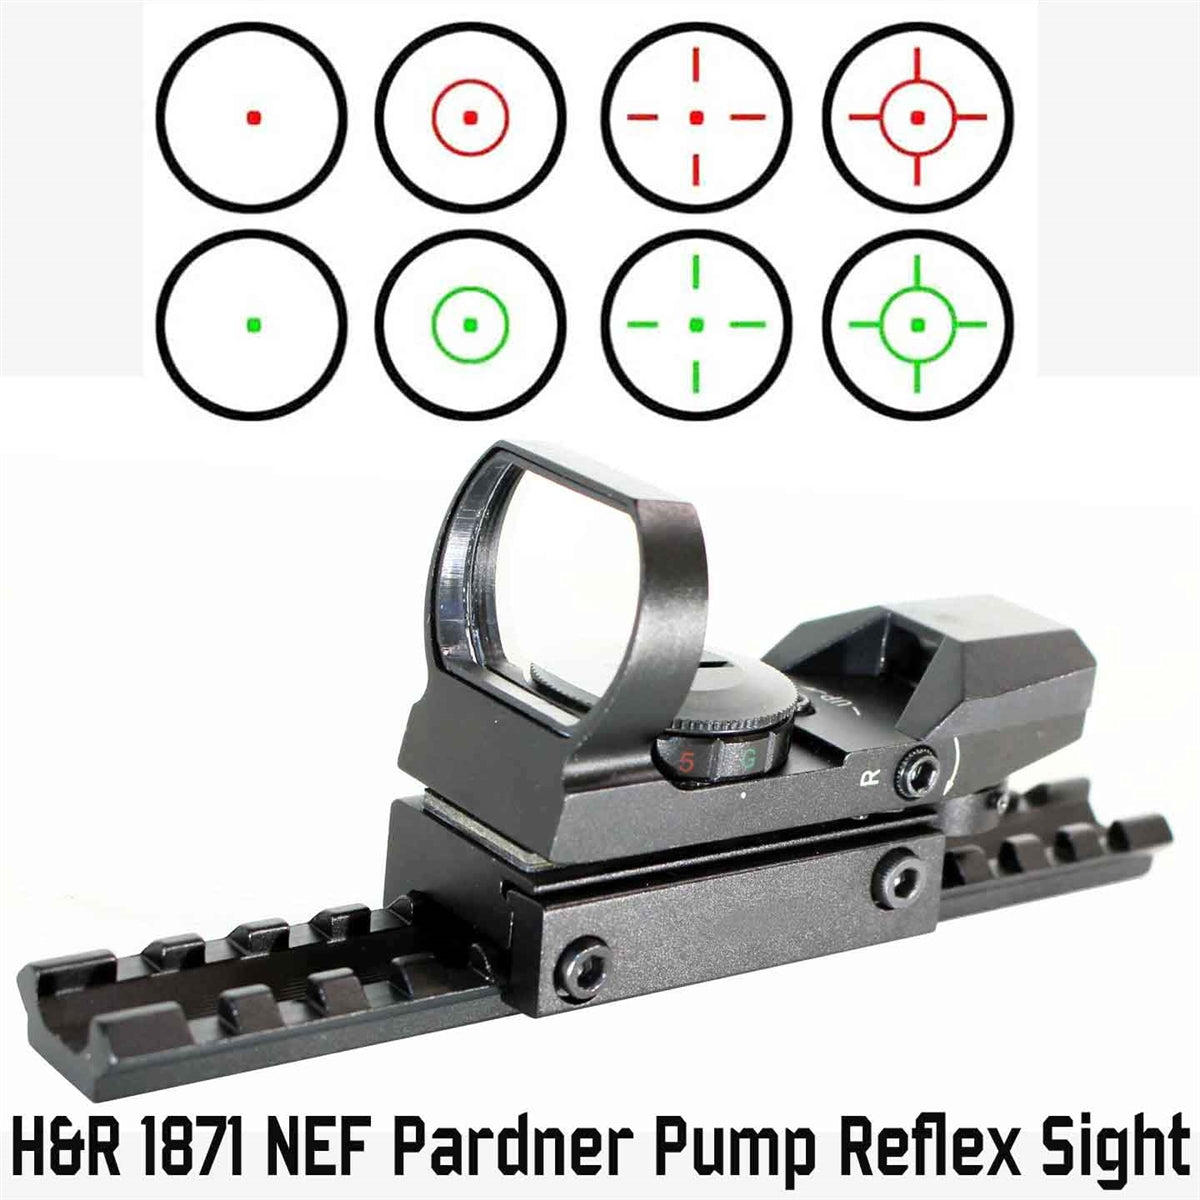 h&r pardner reflex sight.